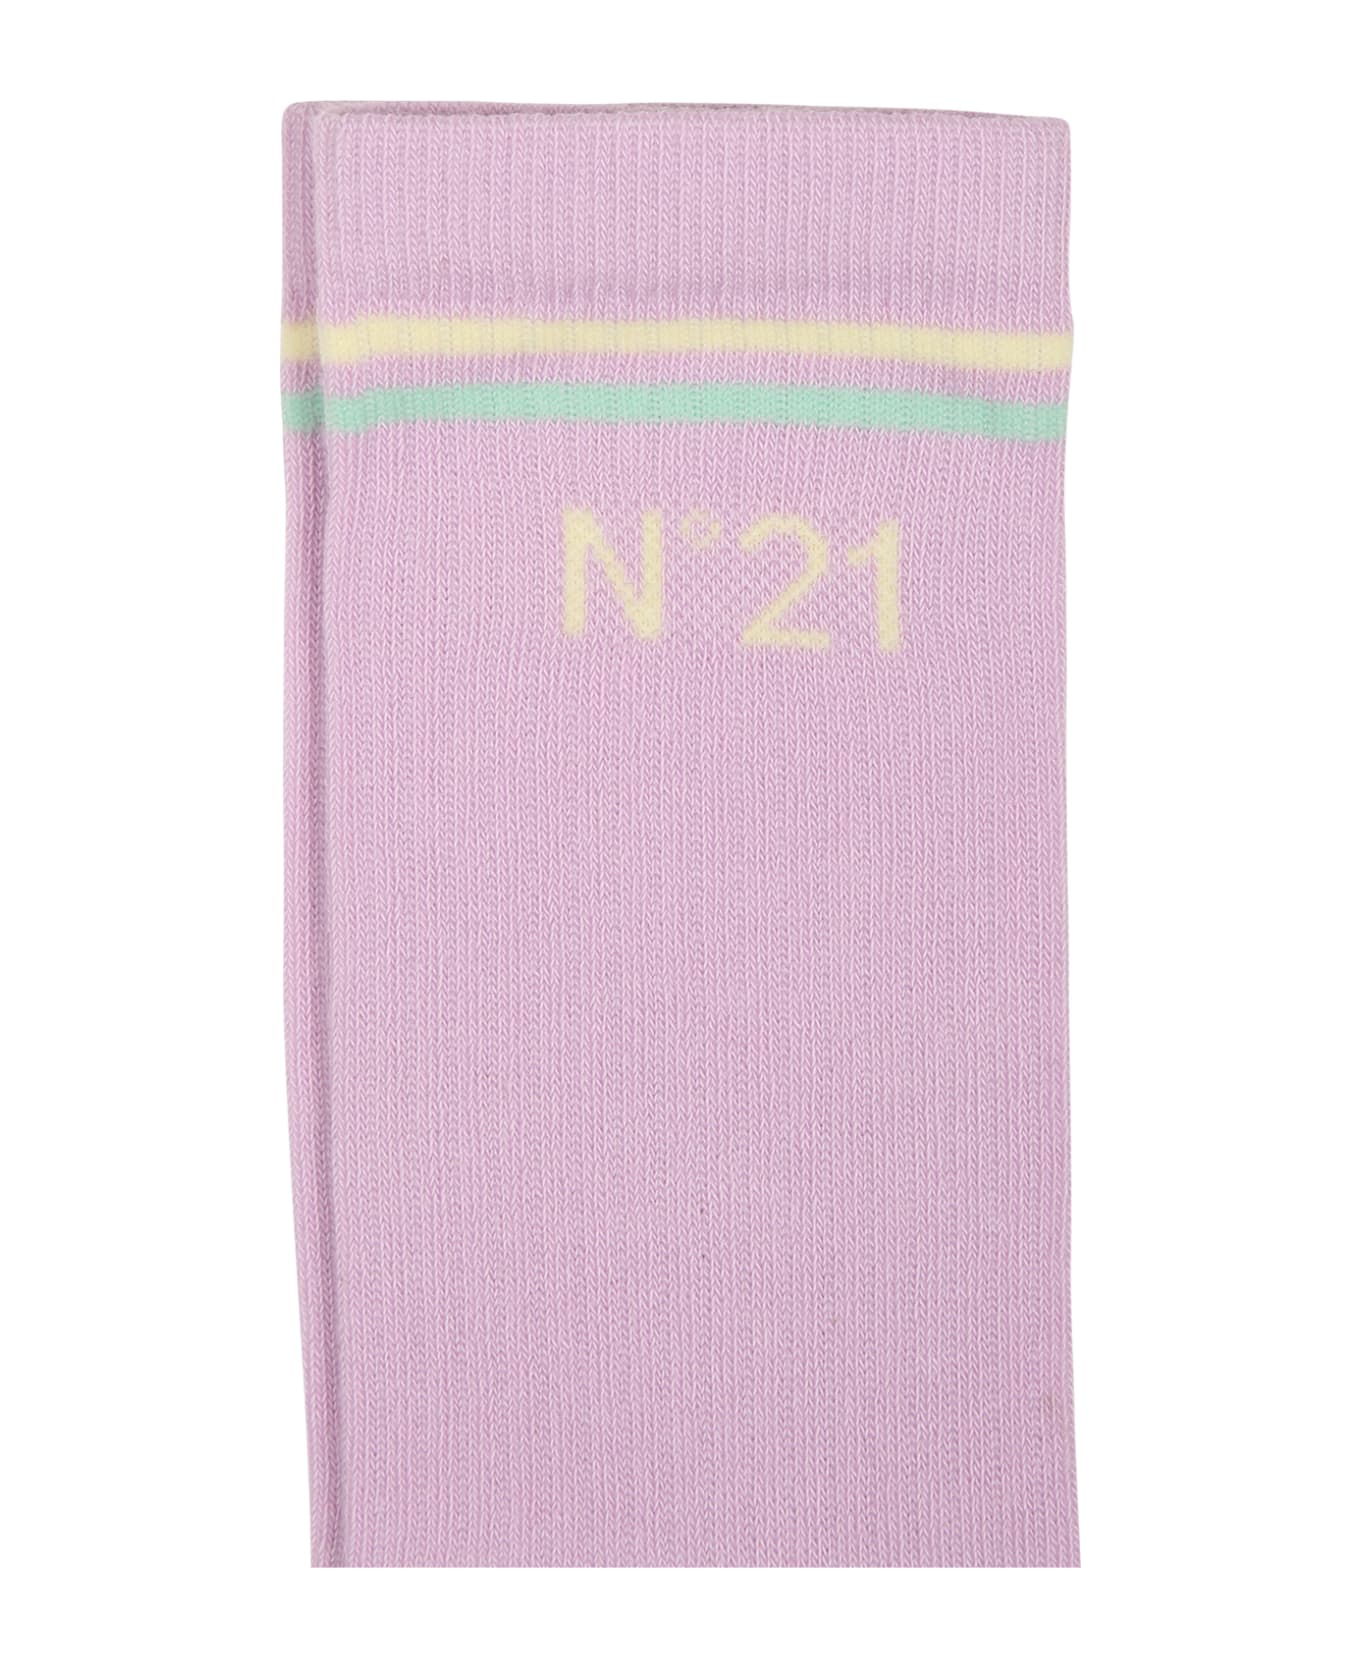 N.21 Liliac Socks For Girl - Pink